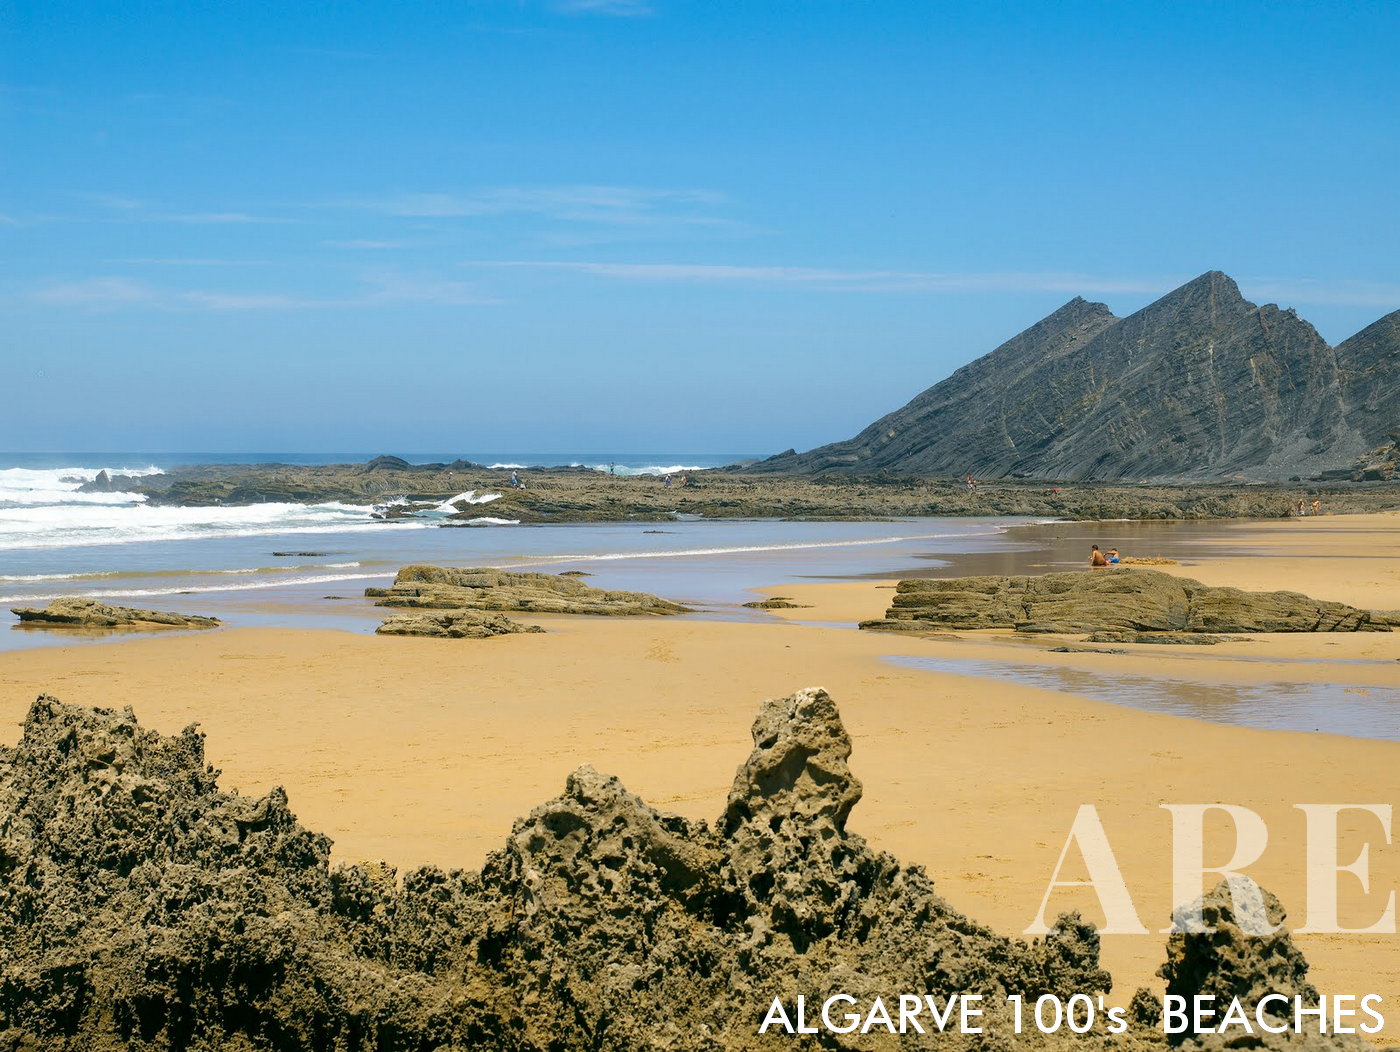 Na Praia da Amoreira, no Algarve, Portugal, dramáticas falésias rochosas marcham em direção ao oceano, sua grandeza espelhada por intrigantes formações rochosas reveladas na costa arenosa na maré baixa